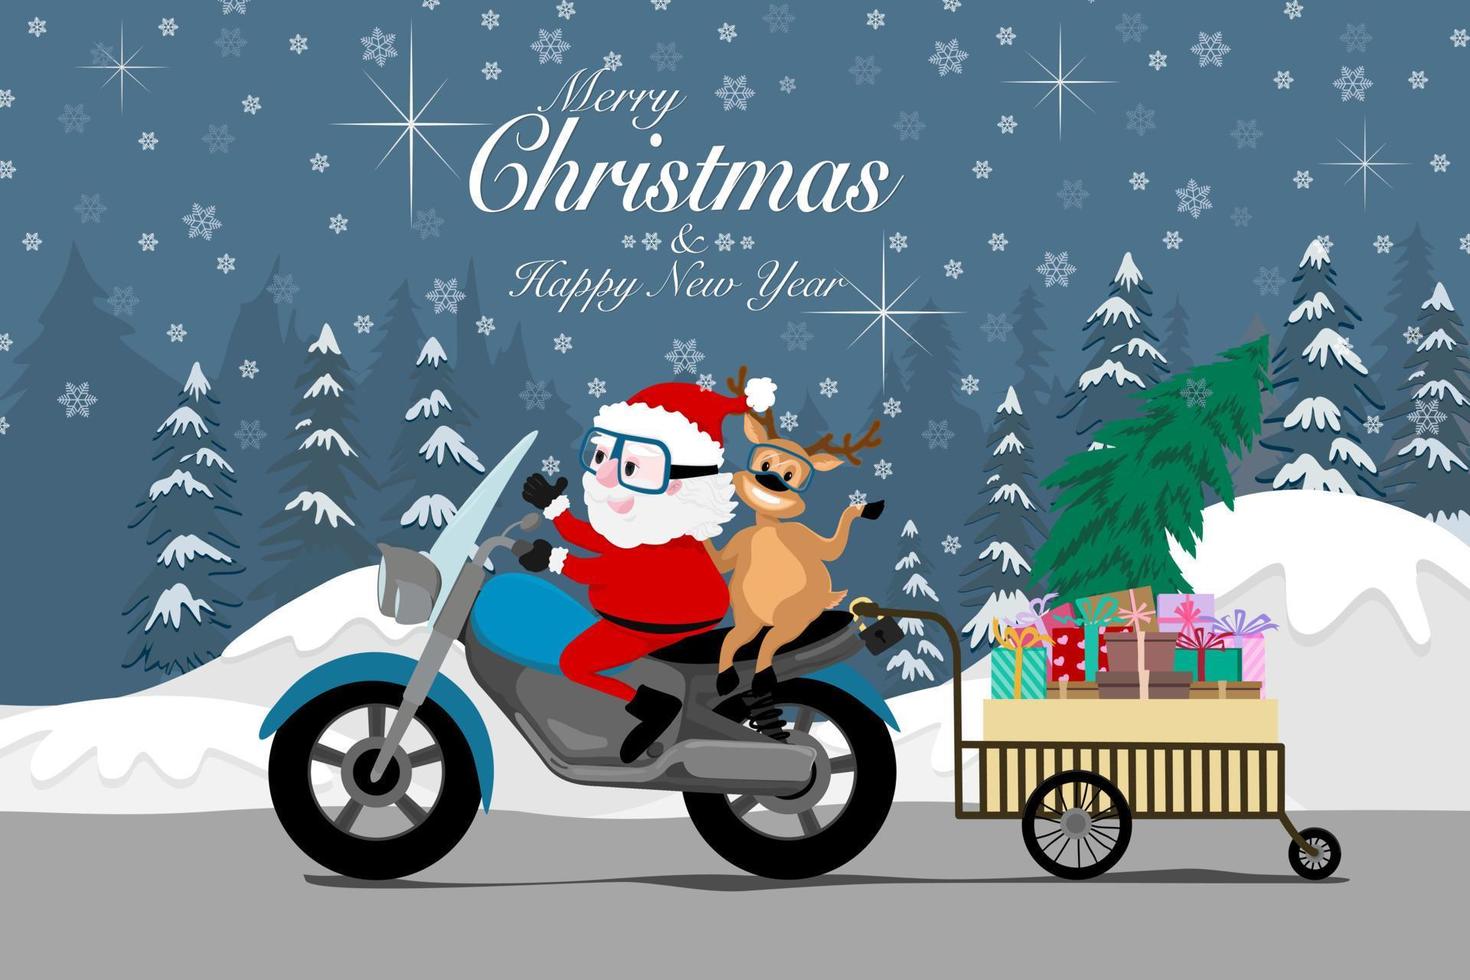 Vektor-Grußkarte für frohe Weihnachten und ein gutes neues Jahr, Zeichnung von Weihnachtsmann und Rentieren, die Motorrad-Liefergeschenke in einem Wagen auf der Straße reiten, gefrorene Kiefern und Schneeflocken im Hintergrund vektor